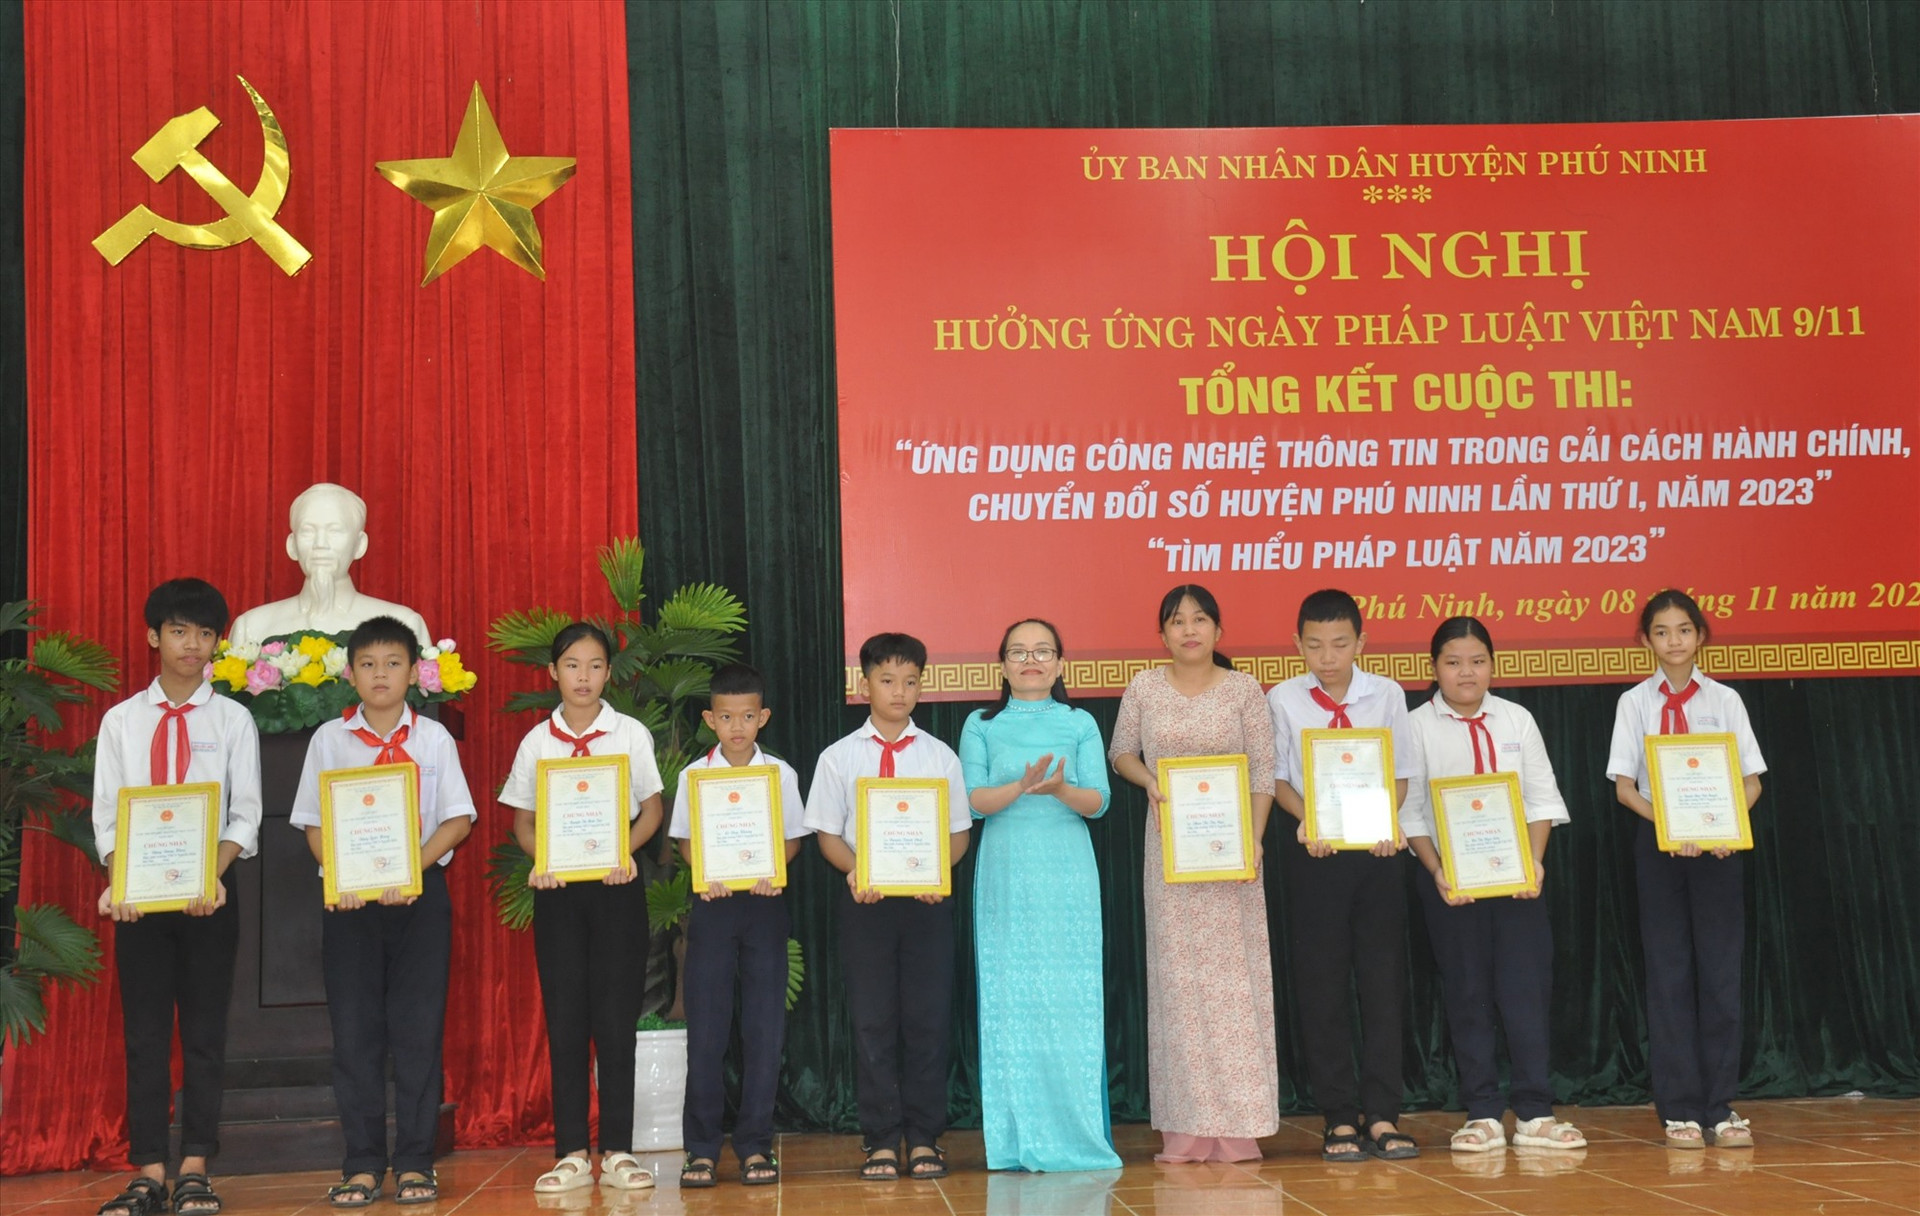 Bà Nguyễn Thị Lệ Lài - Trưởng phòng Tư pháp huyện Phú Ninh trao thưởng cho các học sinh đạt giải cuộc thi “Tìm hiểu pháp luật trực tuyến năm 2023“. Ảnh: N.Đ